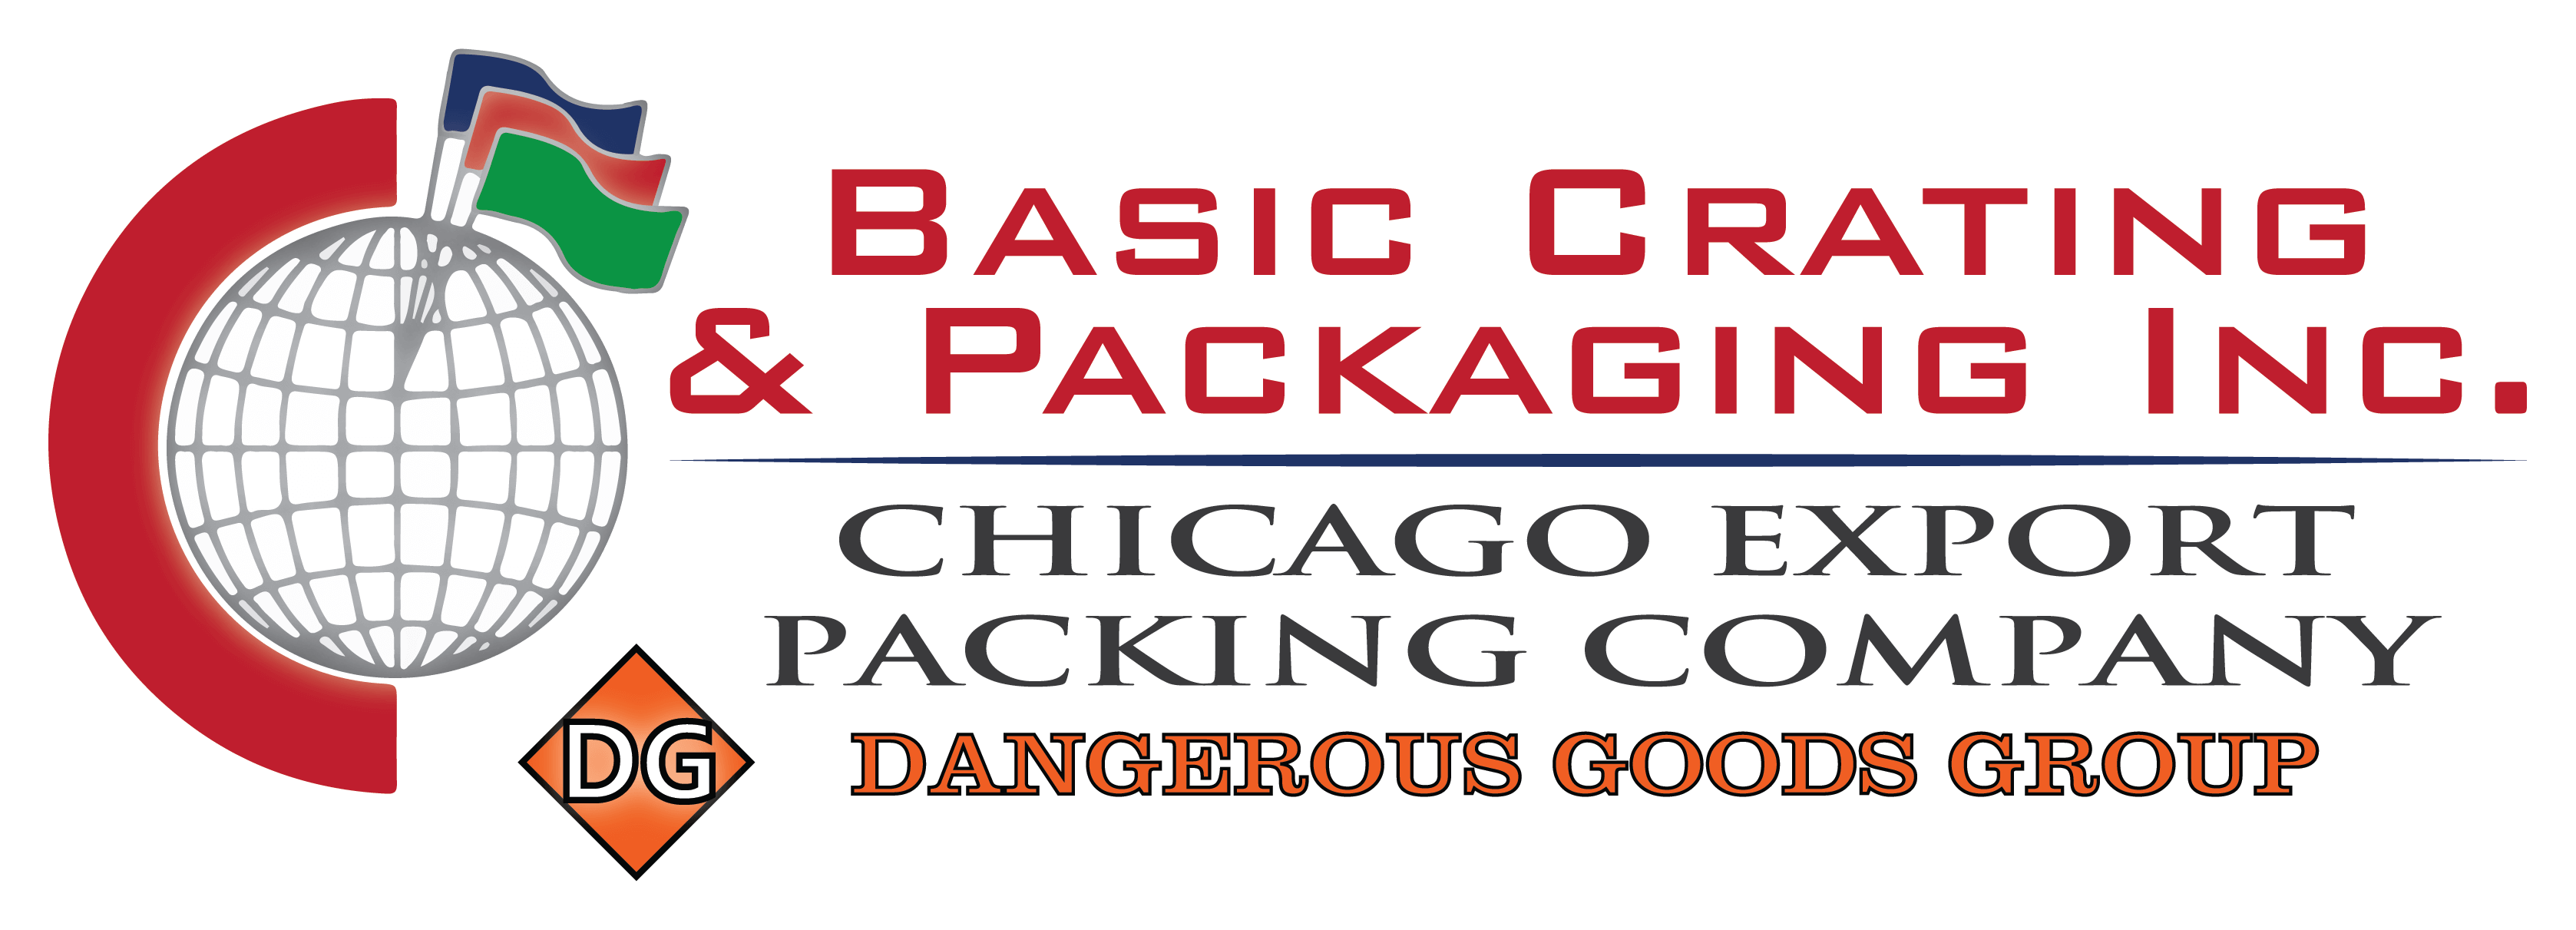 Basic Crating & Packaging Logo